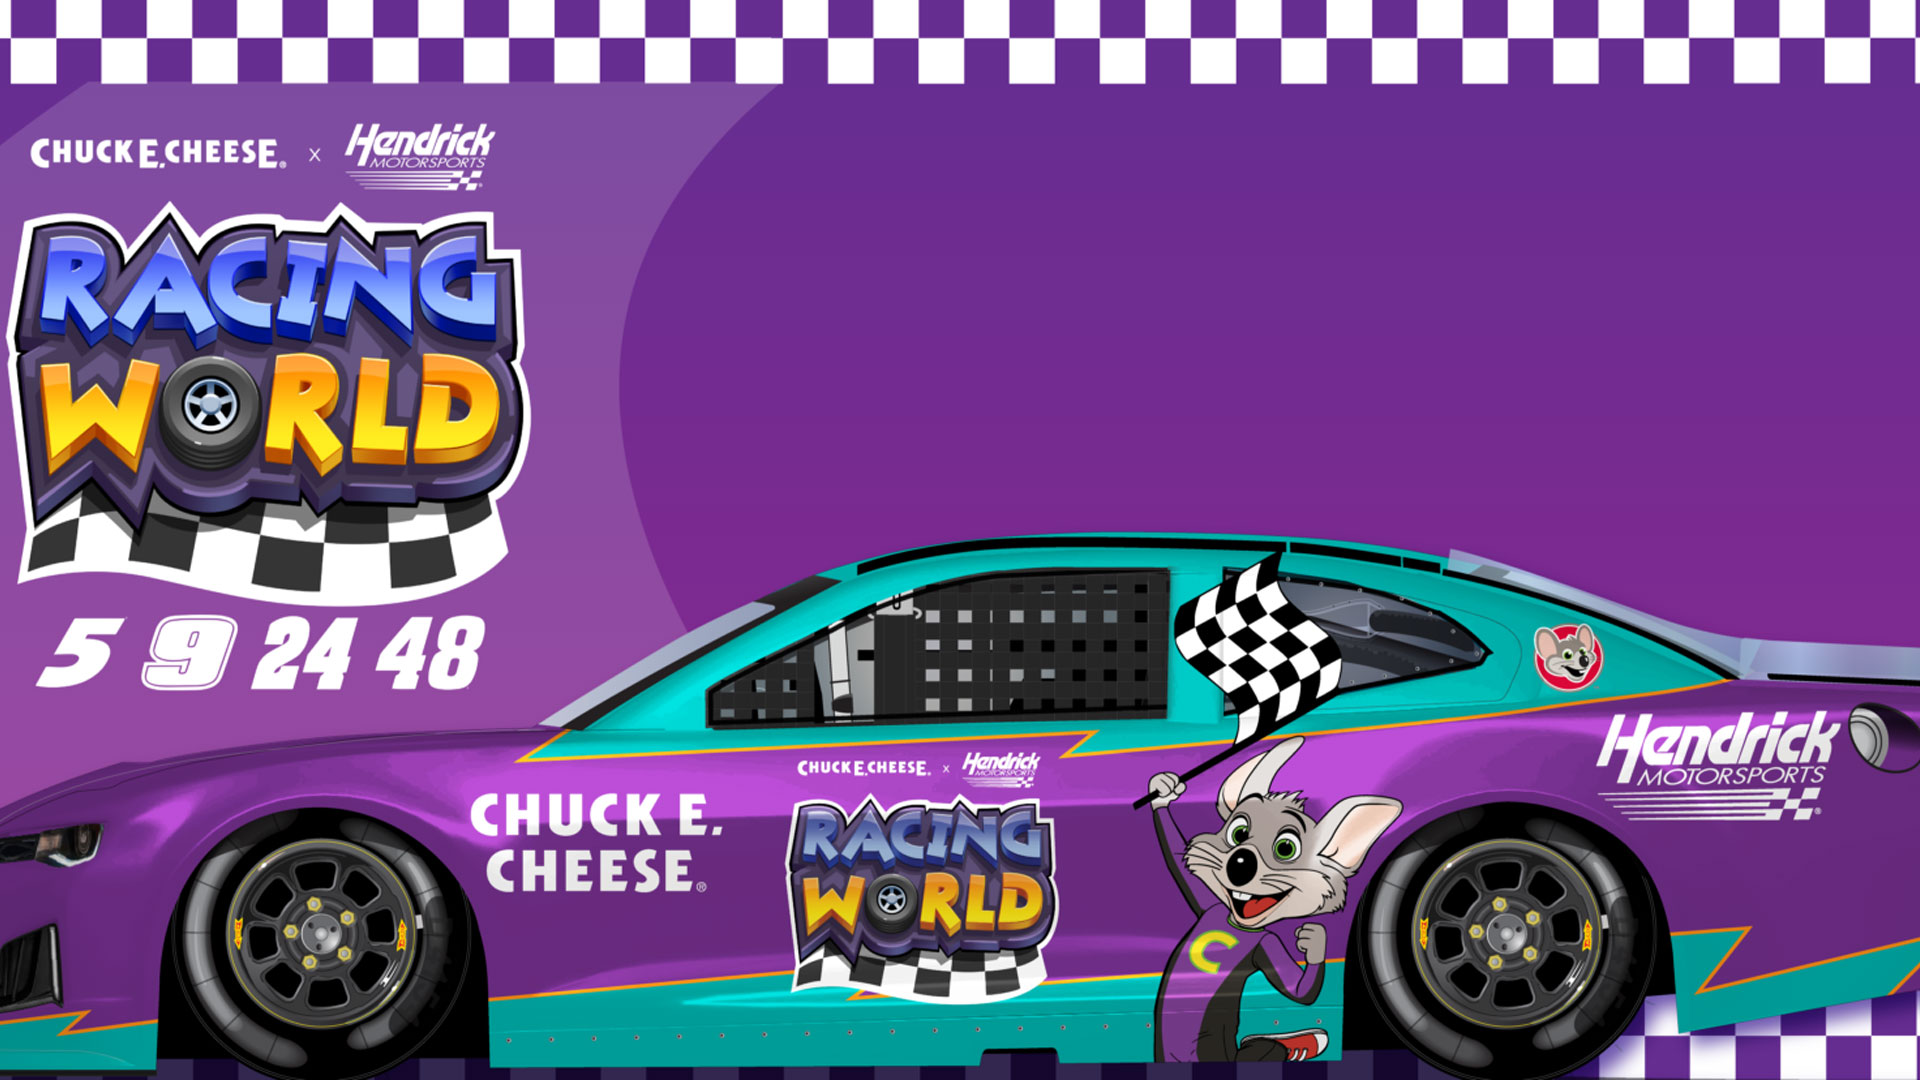 Chuck E. Cheese Racing World Game App